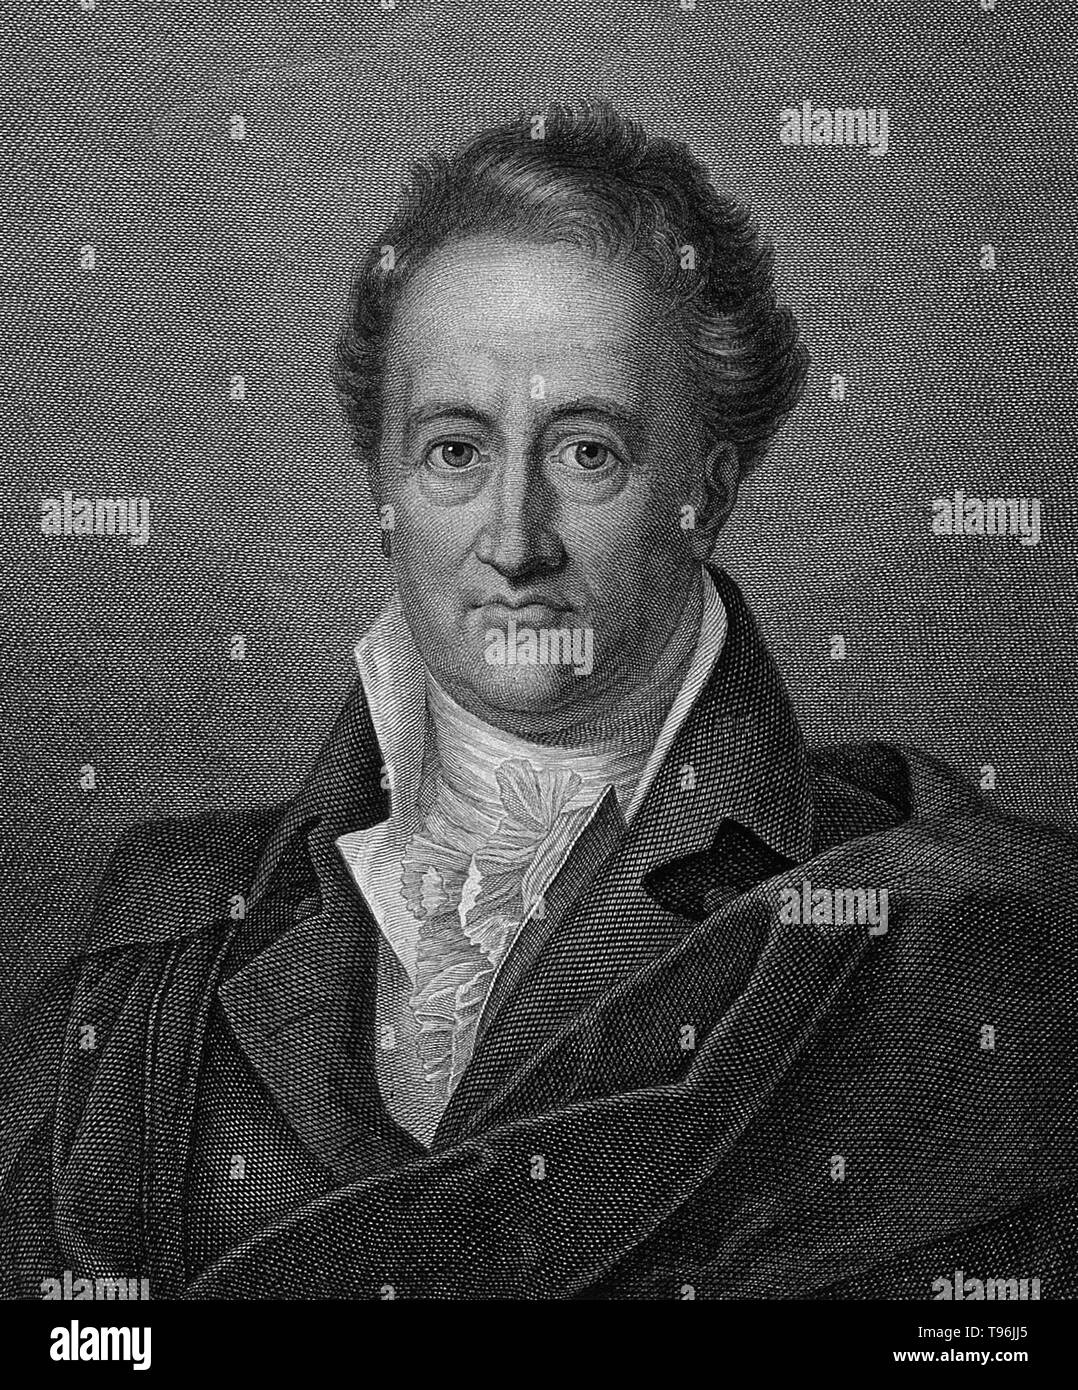 Johann Wolfgang von Goethe (28 agosto 1749 - 22 Marzo 1832) è stato uno scrittore tedesco, artista pittorico, biologo, statista, fisico teorico, e polymath. Egli è considerato il genio supremo della moderna letteratura tedesca. Le sue opere span i campi di poesia, teatro, prosa, filosofia e scienza. Il suo Faust è stato chiamato uno dei più grandi opere drammatiche di letteratura europea moderna. Foto Stock